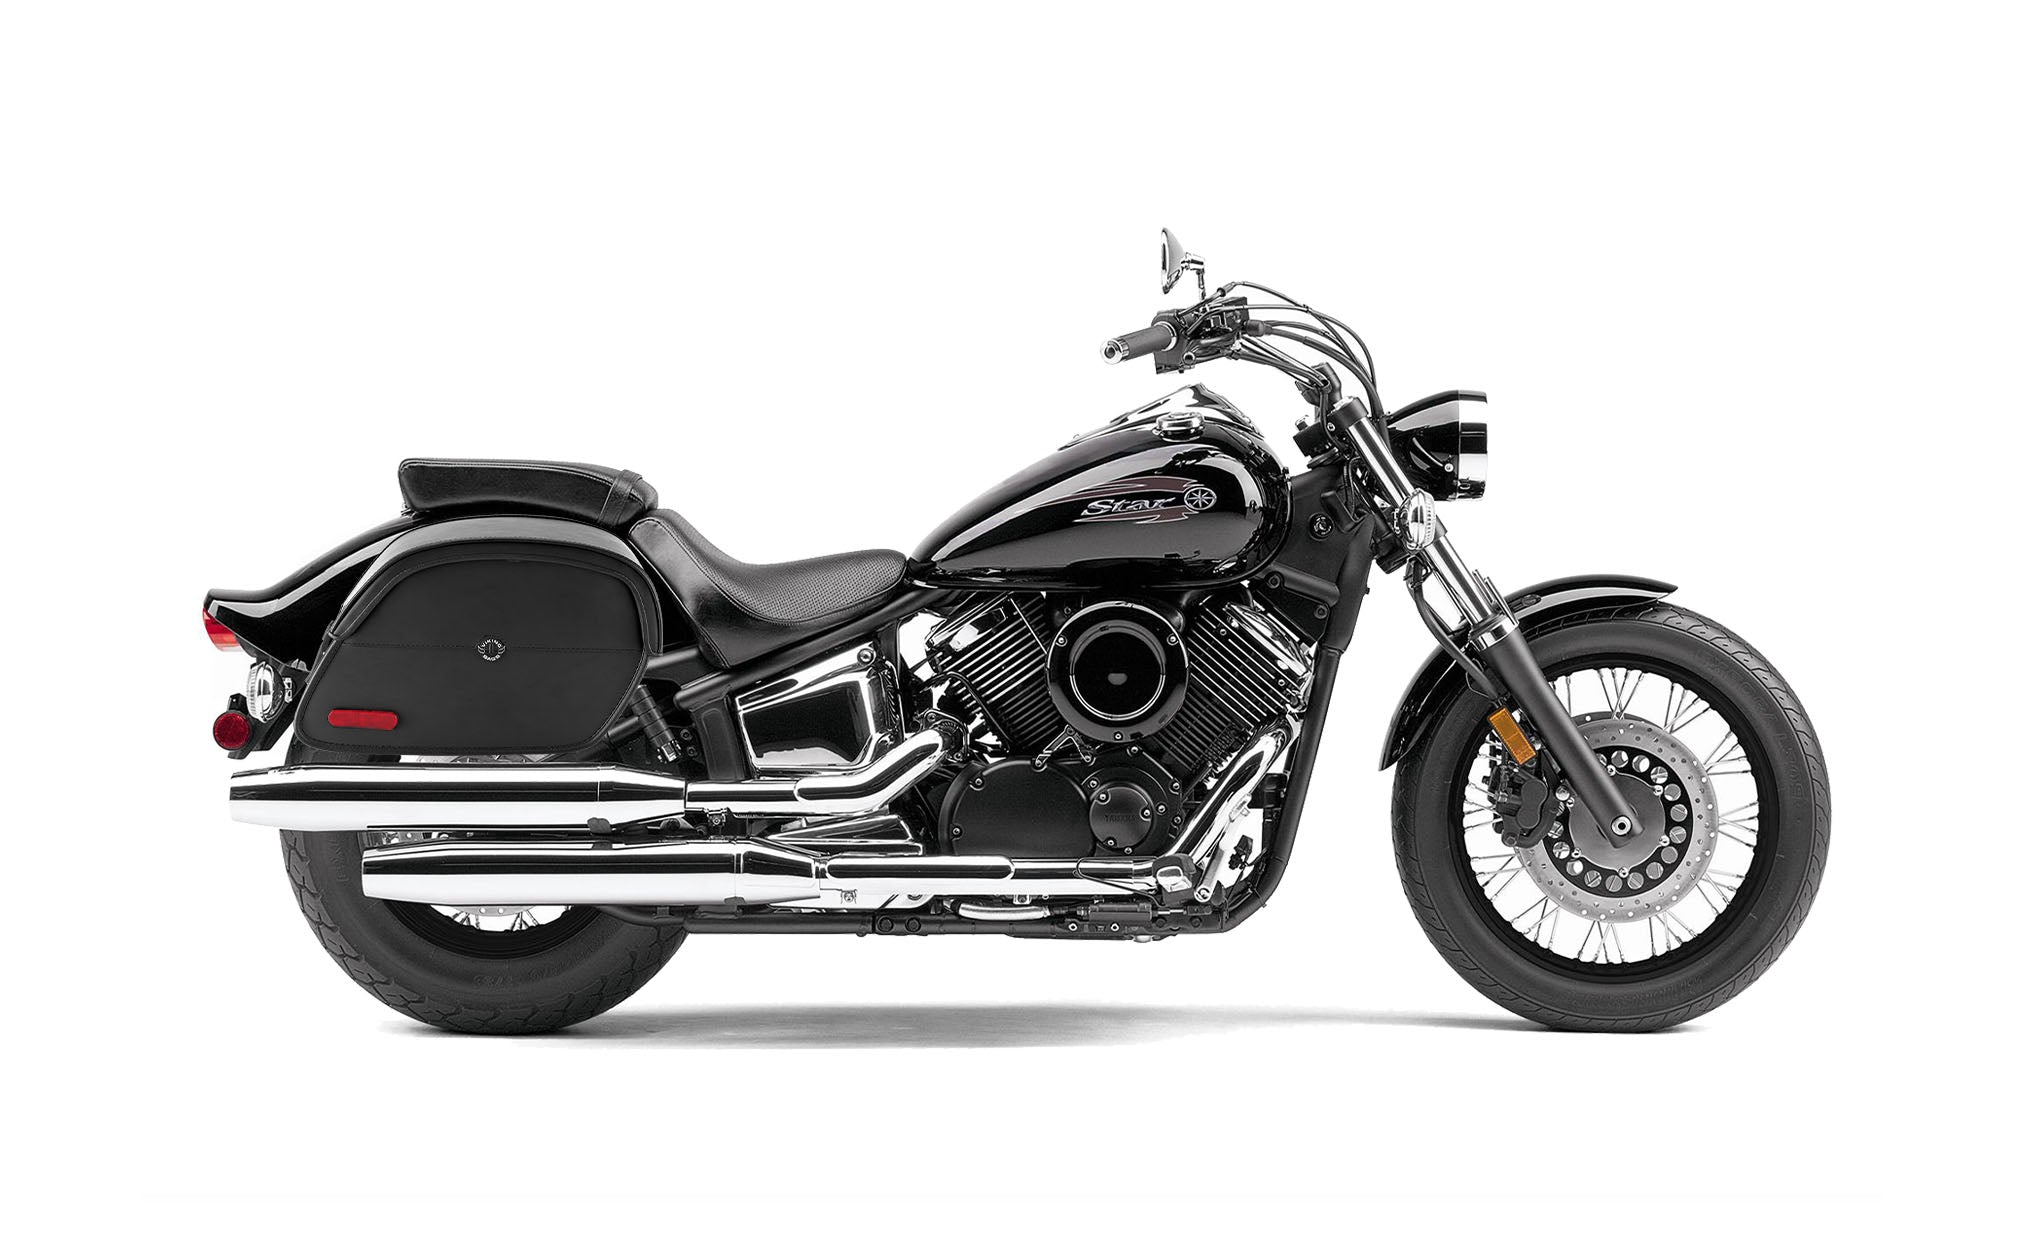 Viking California Large Yamaha V Star 1100 Custom Xvs11T Leather Motorcycle Saddlebags on Bike Photo @expand